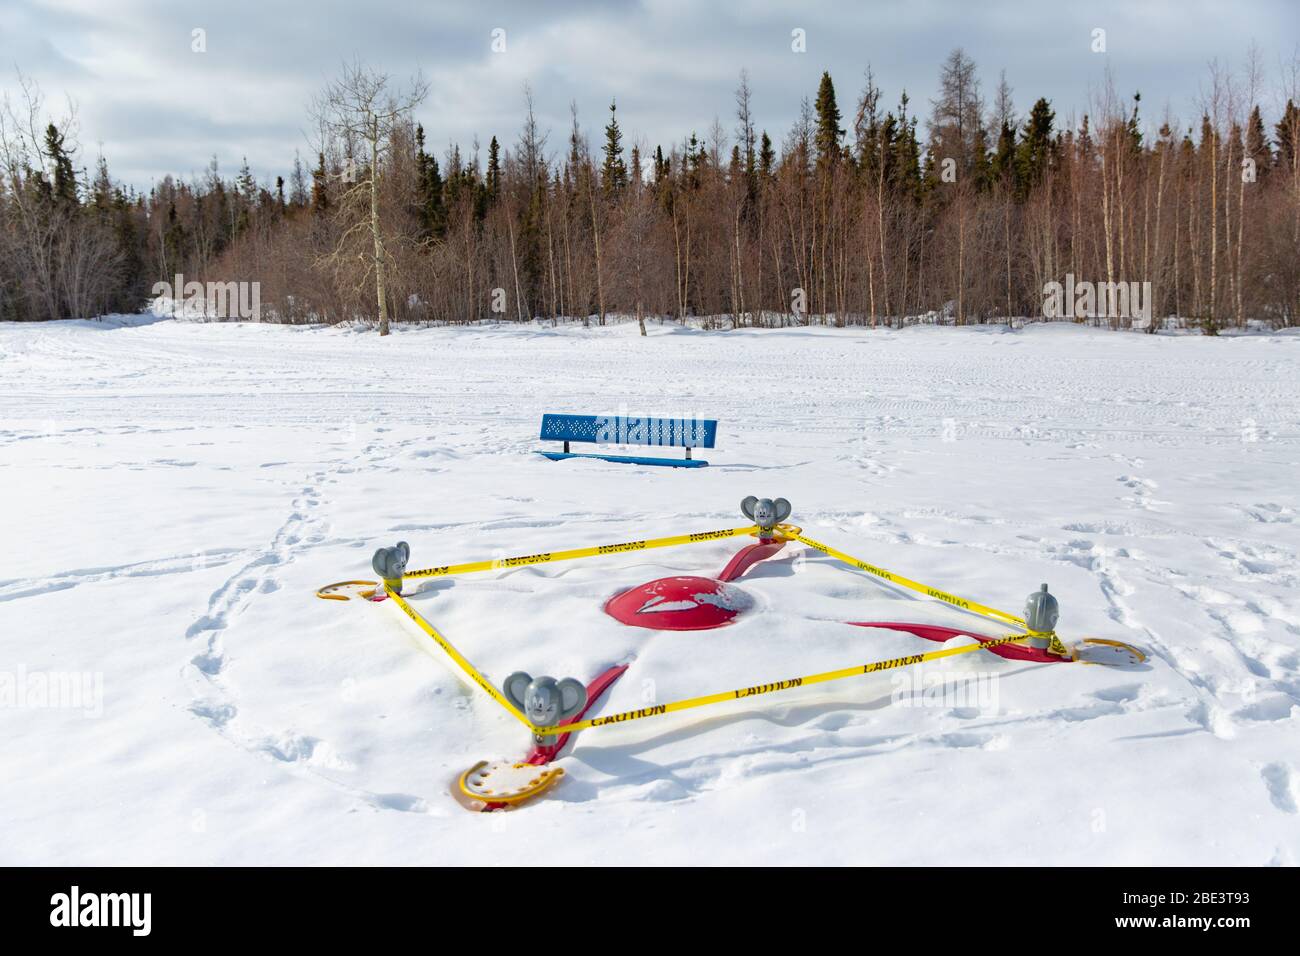 Parksperrung und Spielplatzausrüstung in Schutzband eingewickelt, während einer Coronavirus-Pandemie, Winter, Yellowknife, Northwest Territories, April 2020. Stockfoto